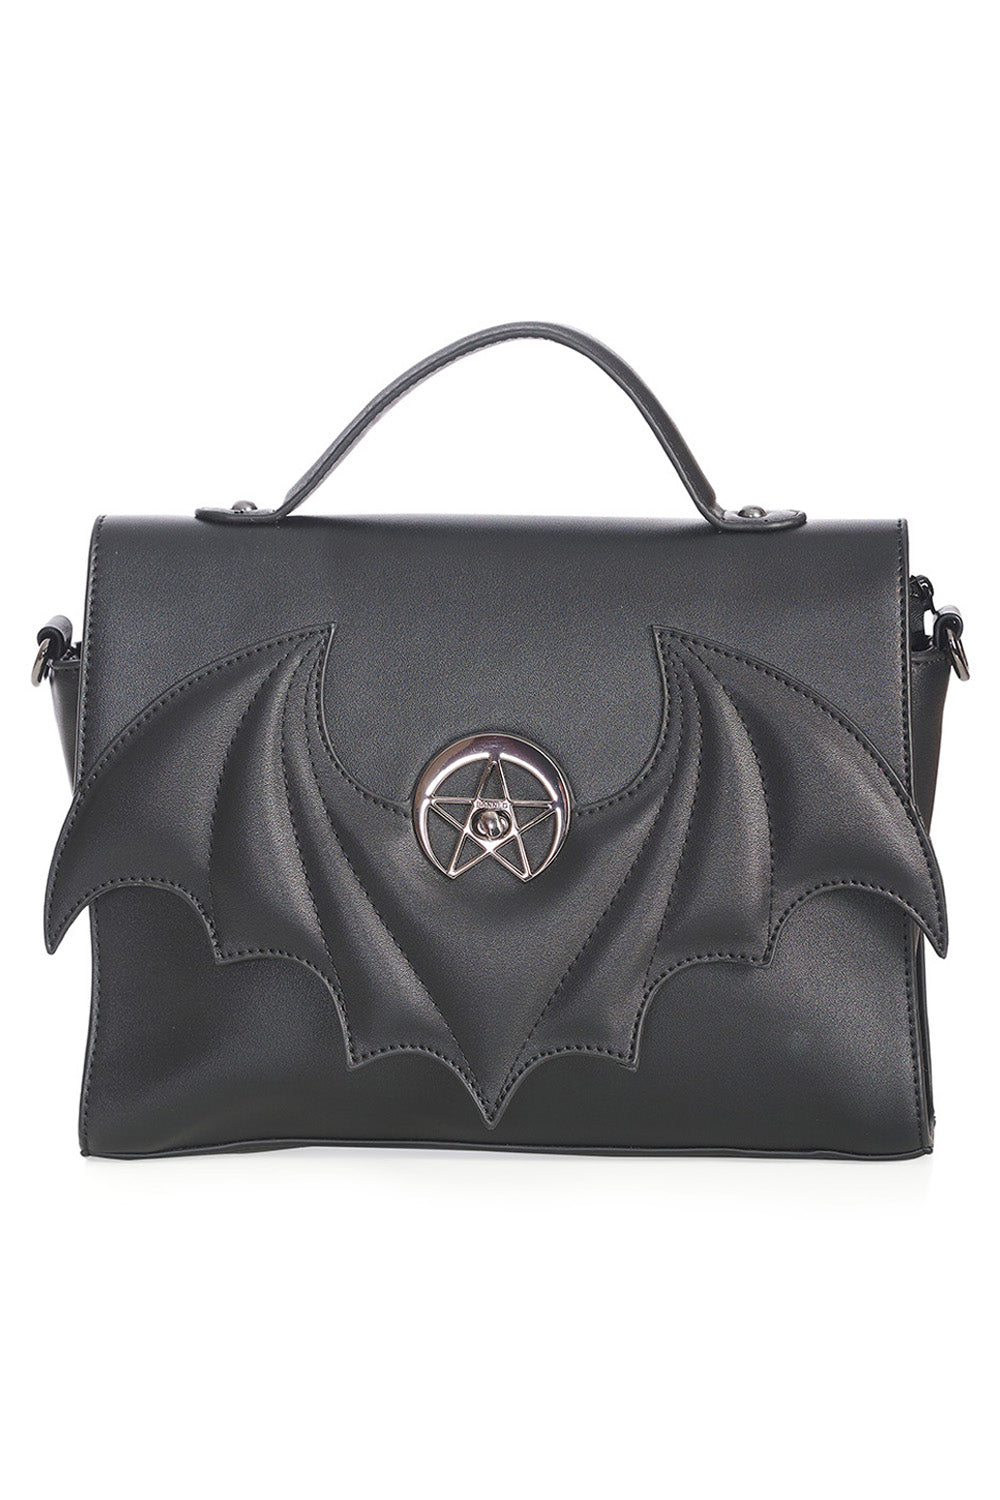 Bat Pentagram Bag